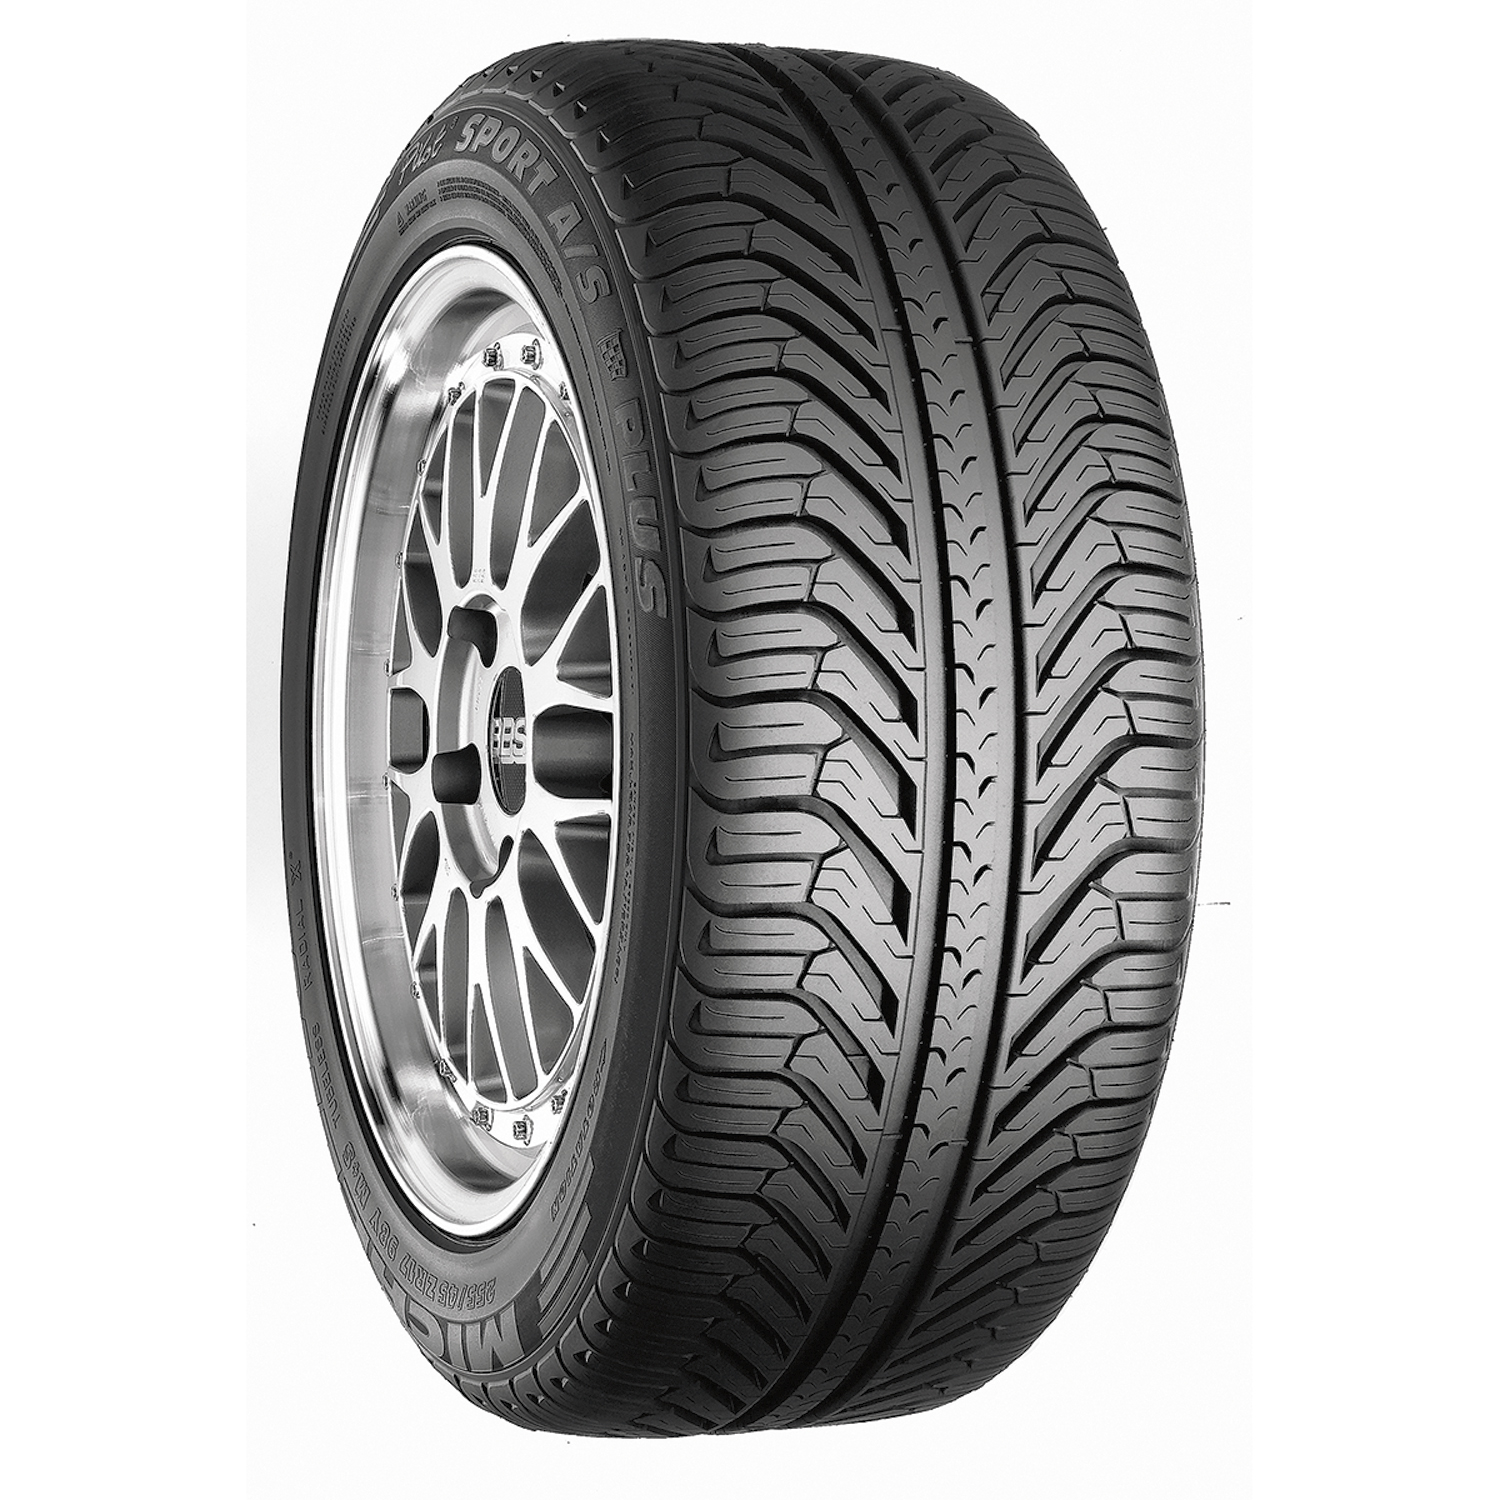 Michelin Pilot Sport A/S Plus Zero Pressure - 285/35R19 99Y BW - All Season Tire